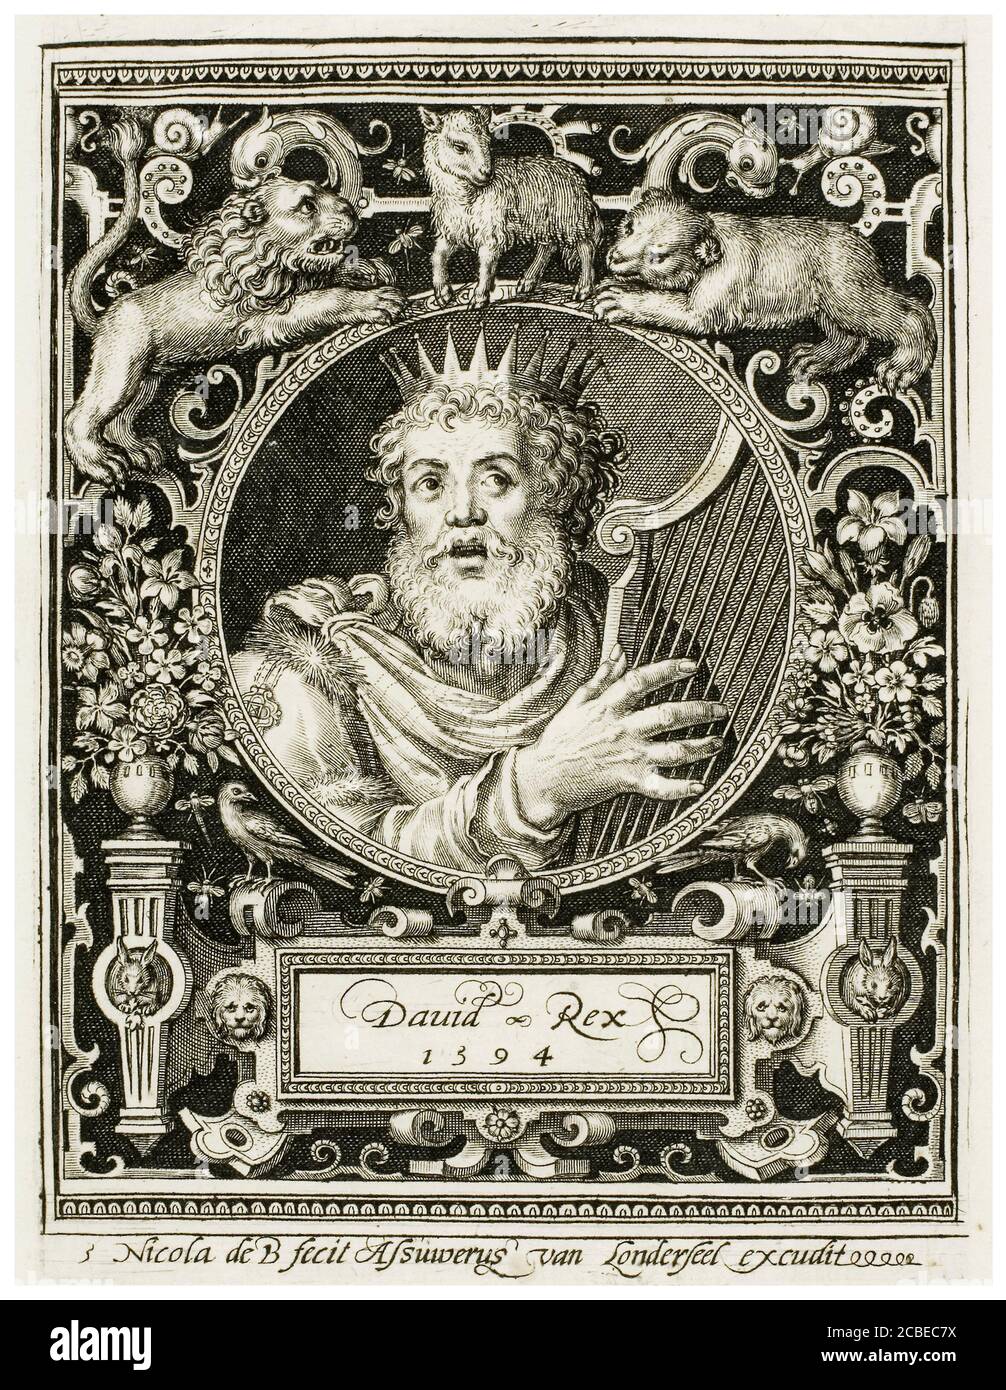 Roi David, plaque cinq des neuf millepertuis, portrait gravé par Nicolaes de Bruyn, 1594 Banque D'Images